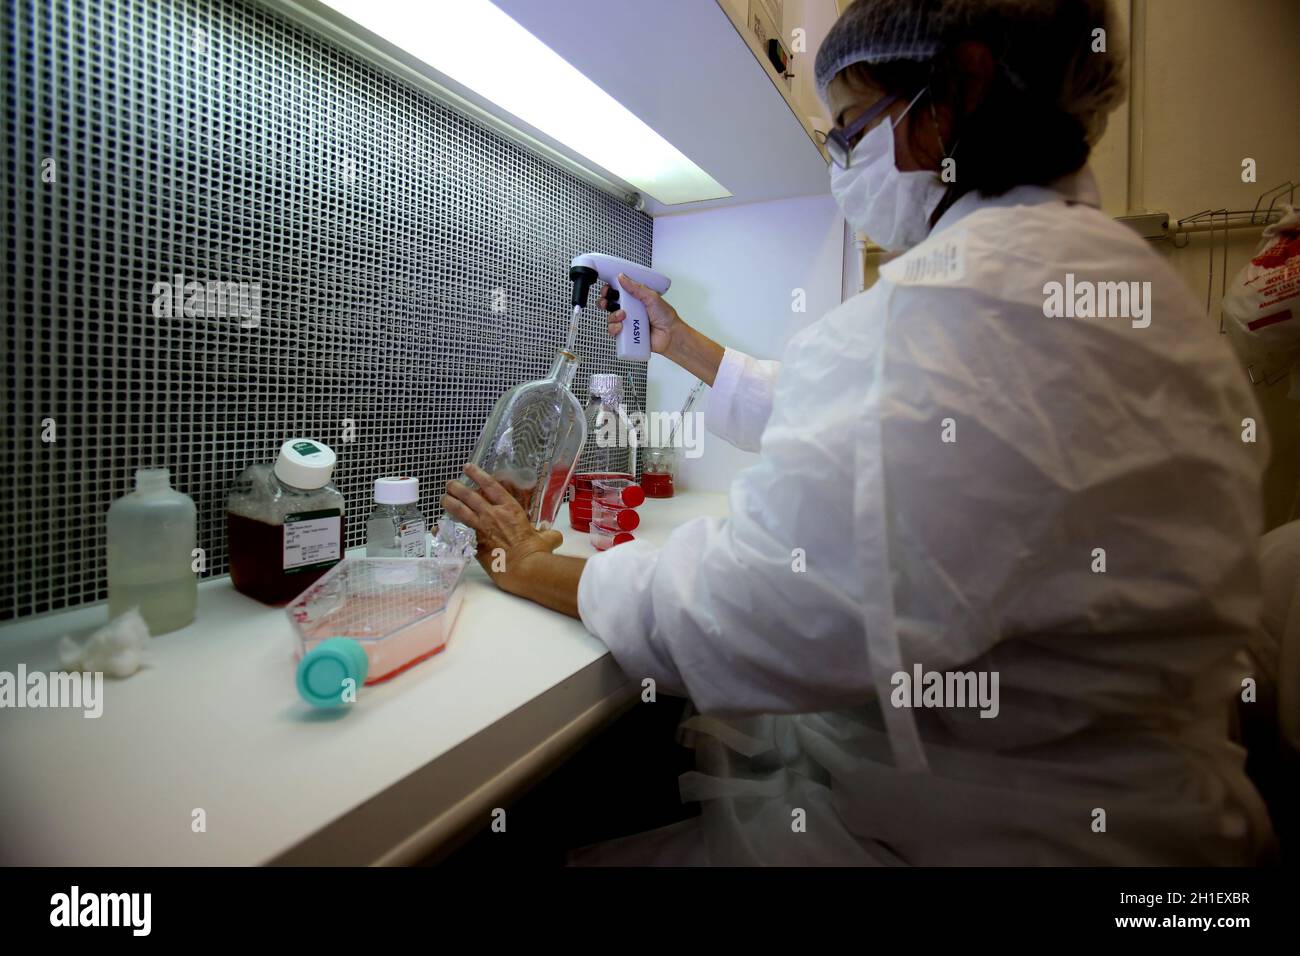 salvador, bahia / brasil - 18 de enero de 2017: Se ve a la persona manejando equipos en Laboratorio de Biología en la ciudad de Salvador. *** Título local *** Foto de stock